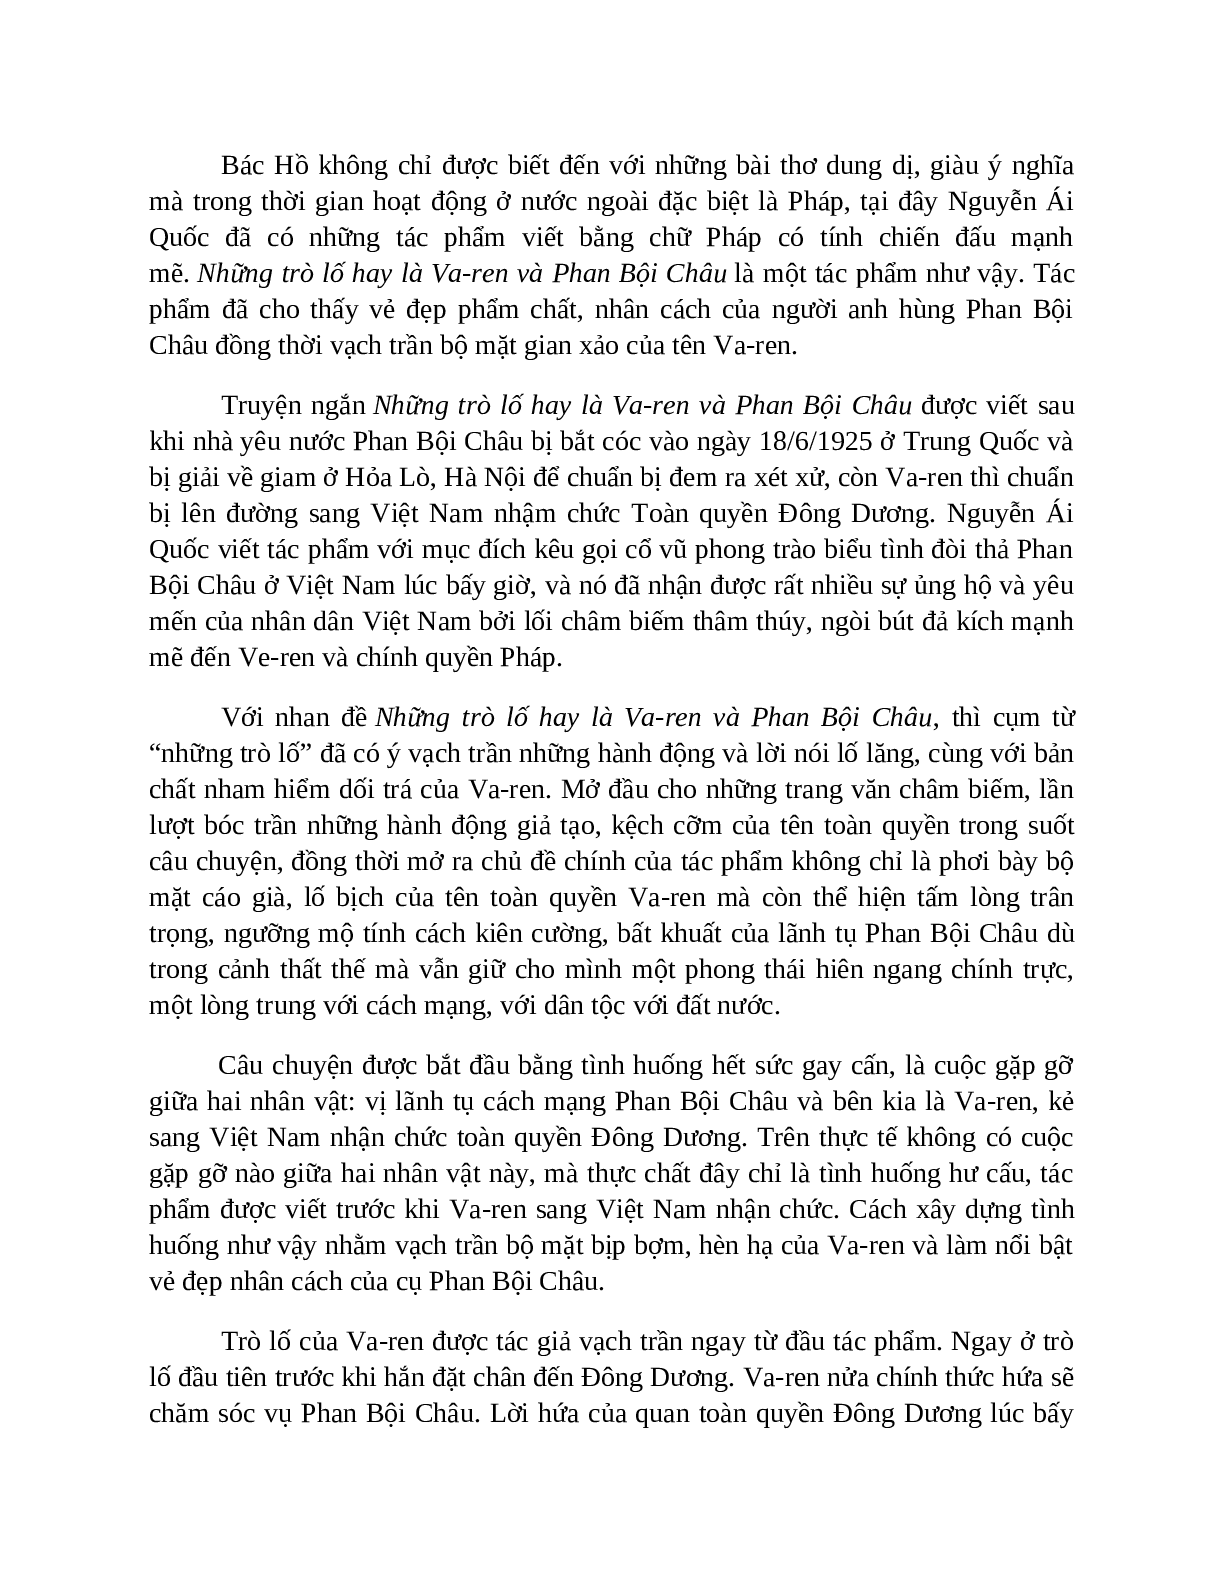 Sơ đồ tư duy bài Những trò lố hay là Varen và Phan Bội Châu dễ nhớ, ngắn nhất - Ngữ văn lớp 7 (trang 5)